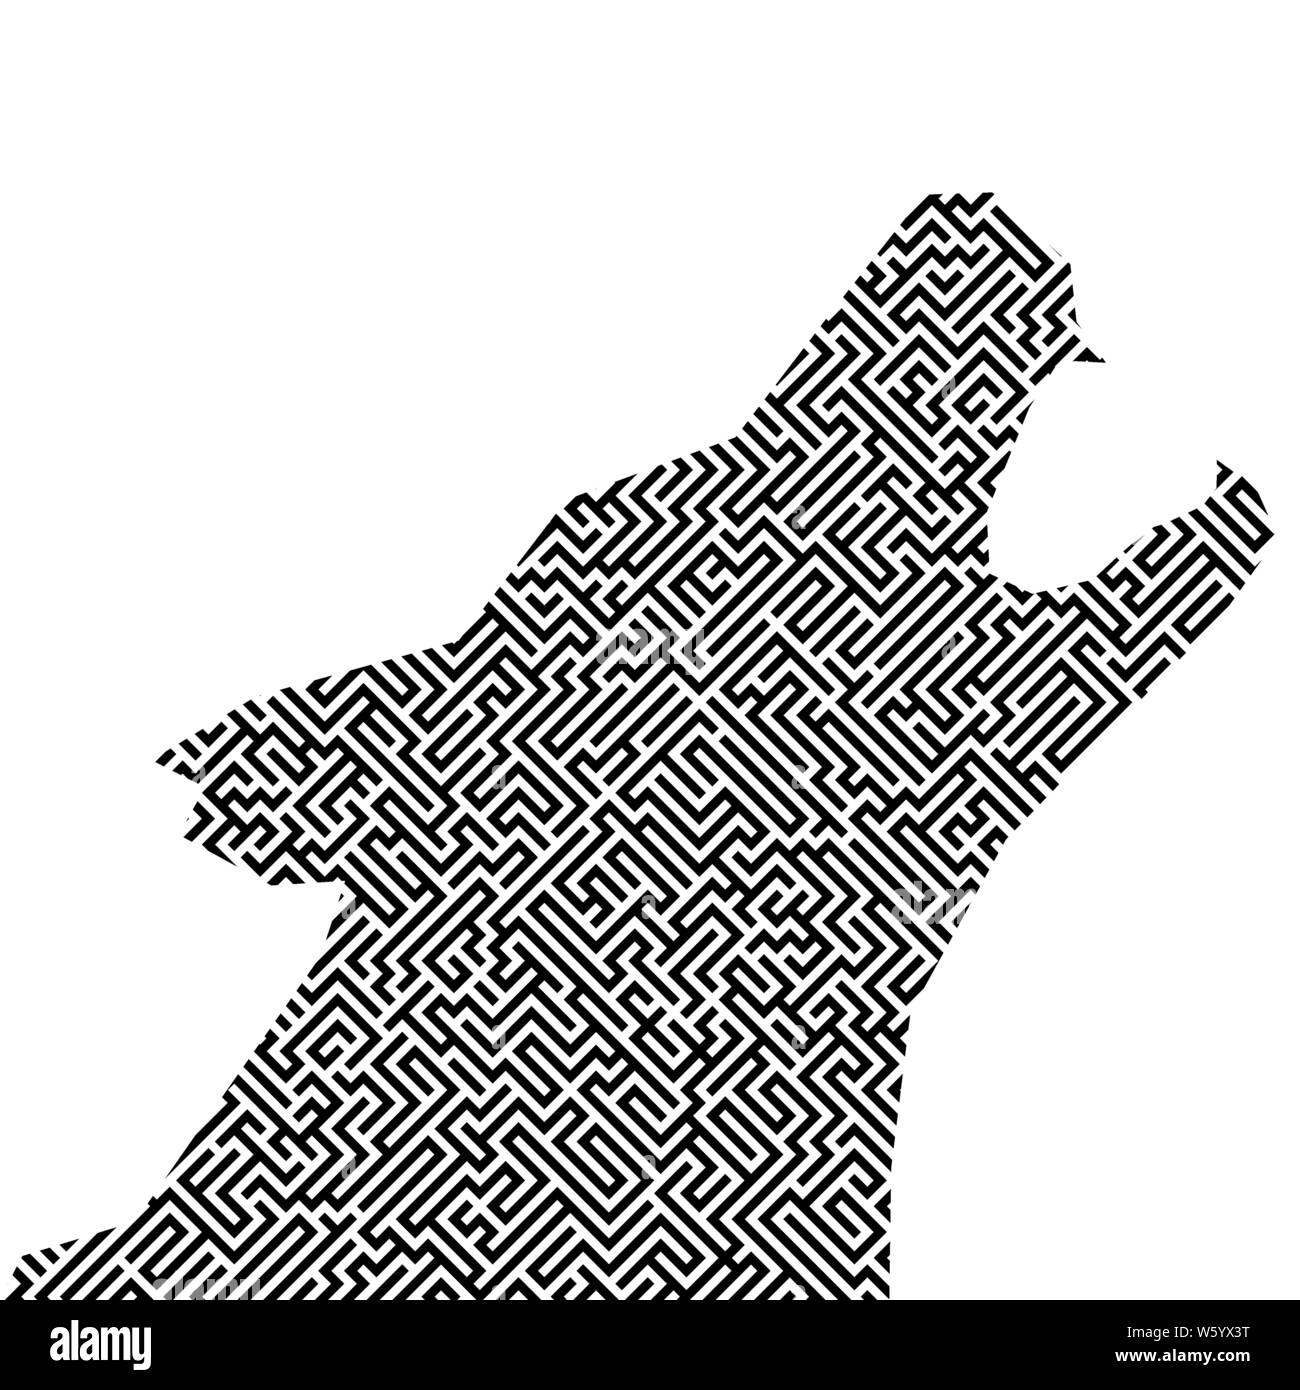 Illustrazione Vettoriale. Capo Lupo silhouette con labirinto o labirinto texture. Isolato. Illustrazione Vettoriale